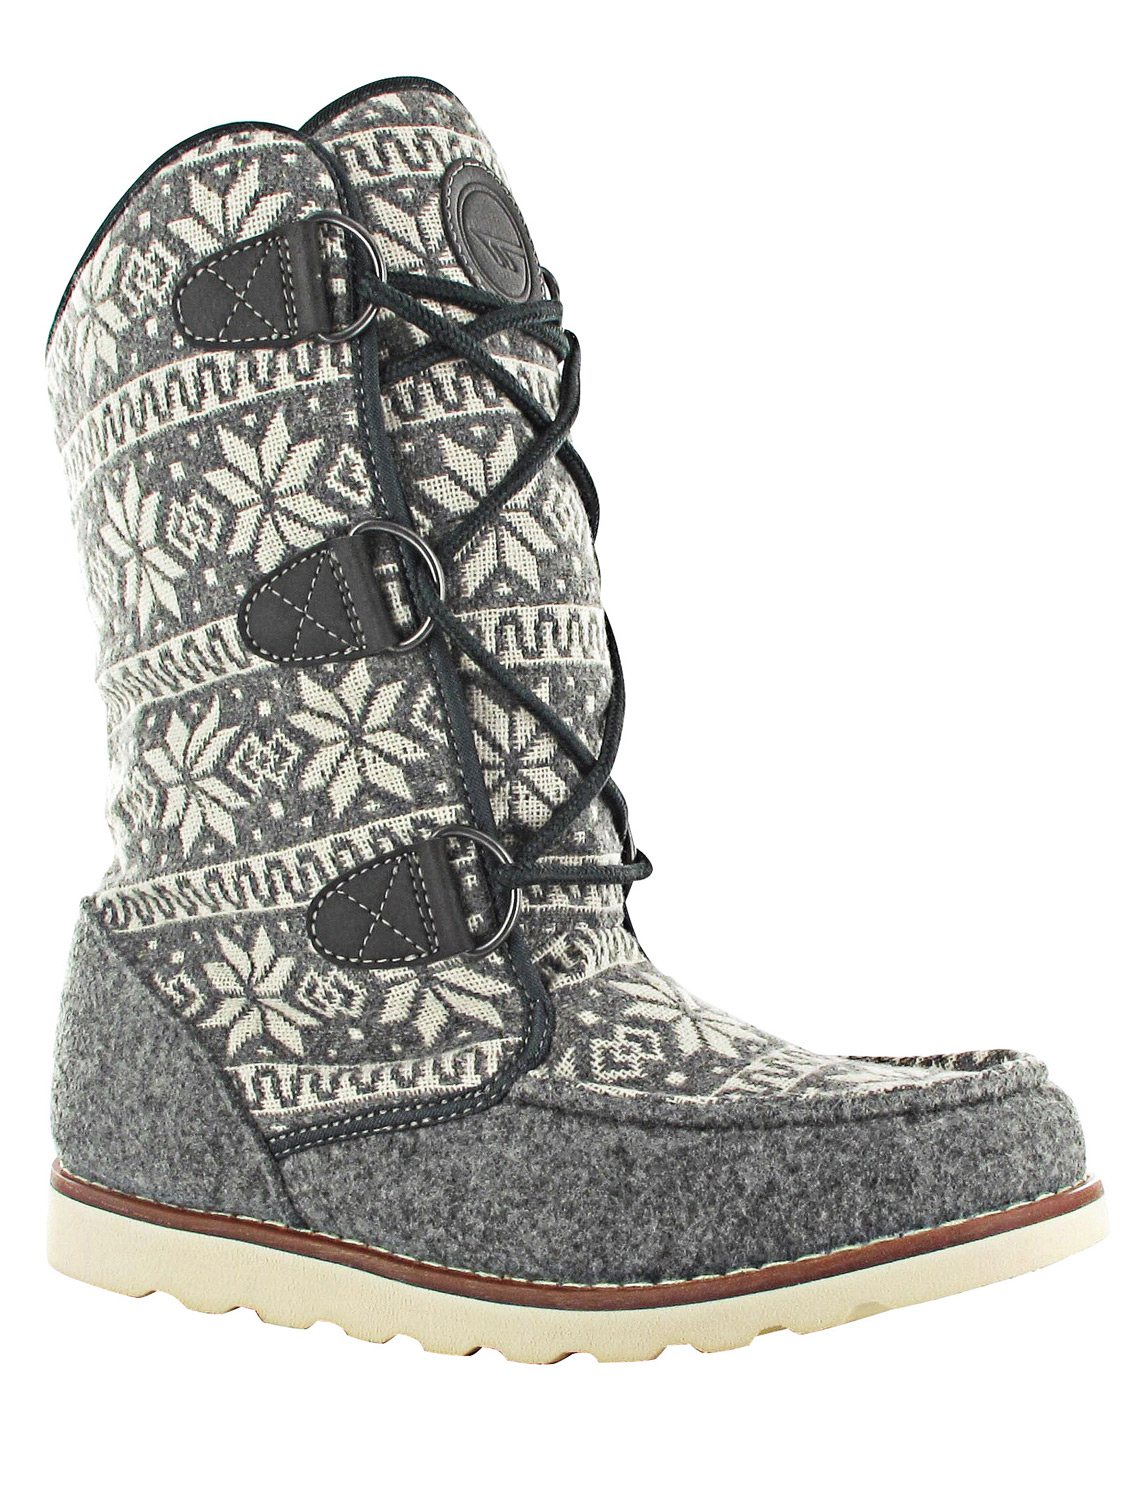 Hi-tec Concession Womens Thomas Boot 200 I Grey - Size: 8